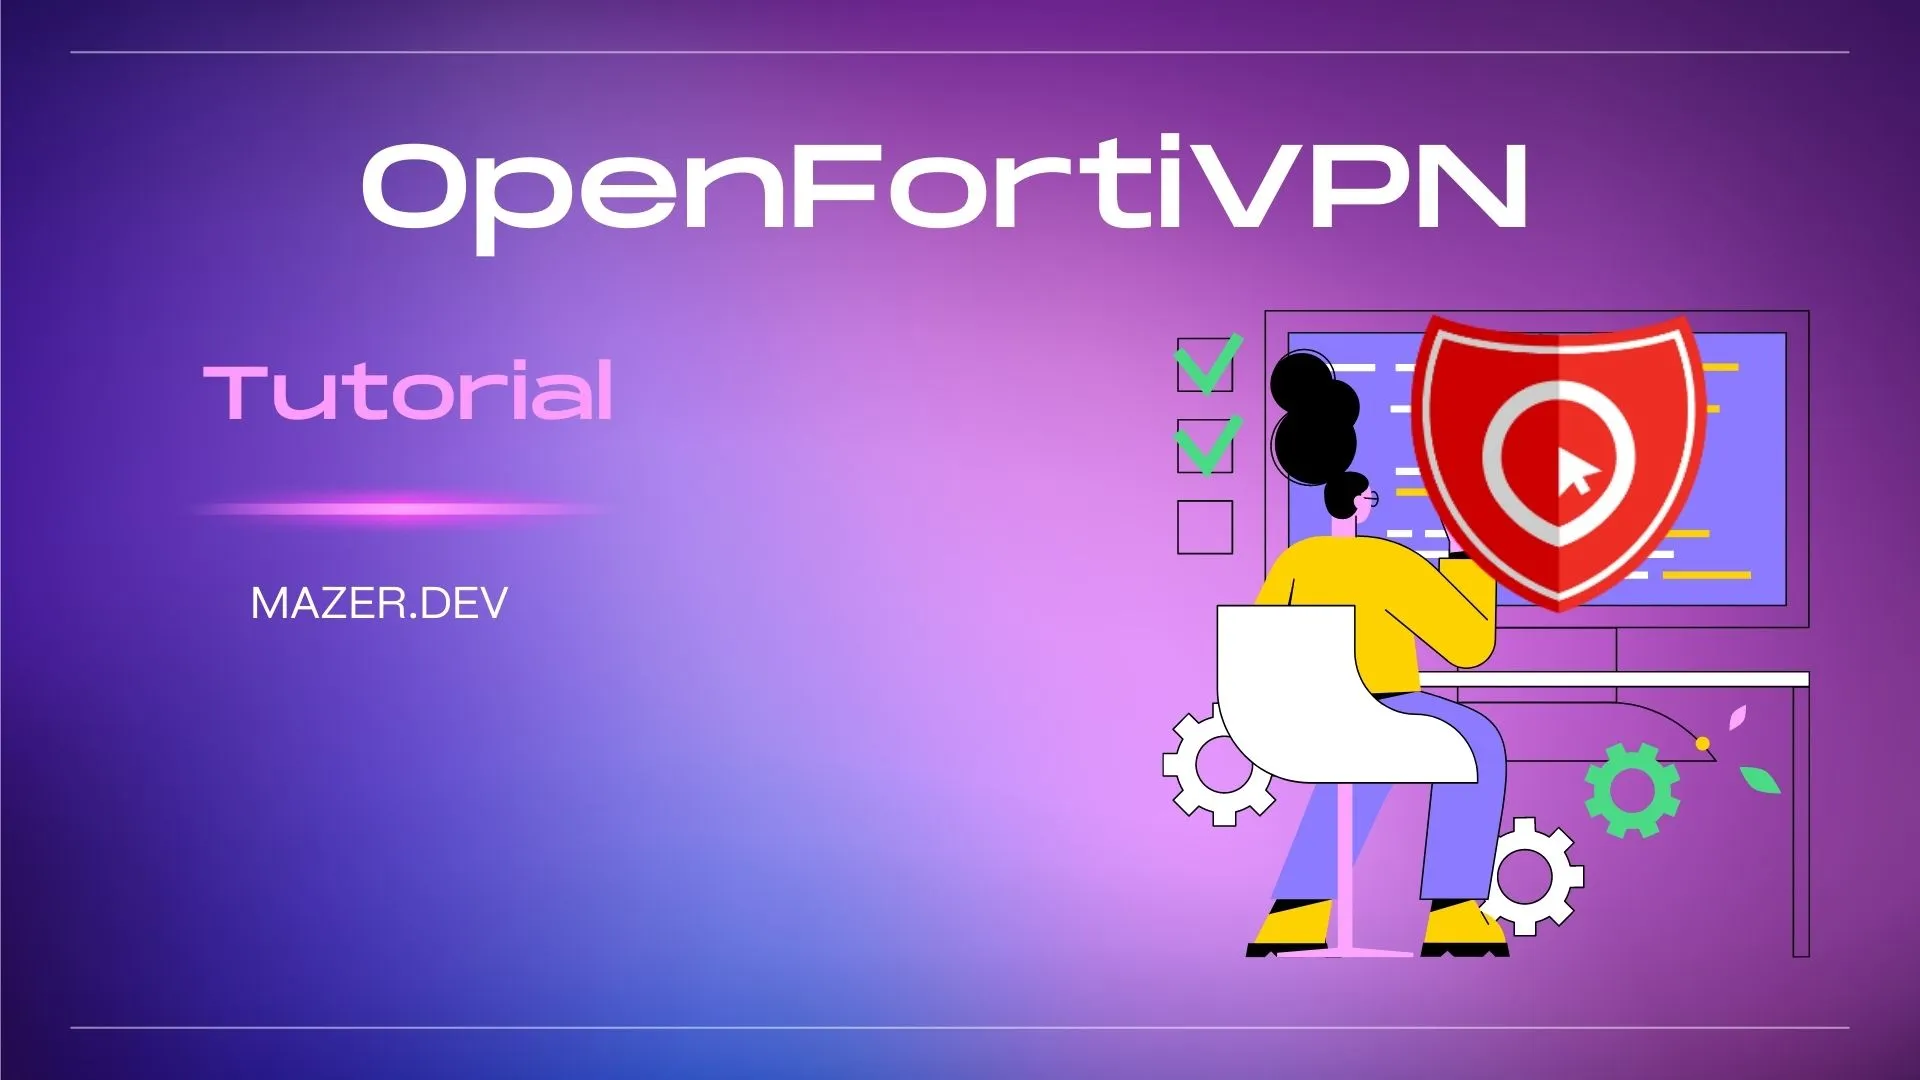 Um guia completo para instalação, configuração e uso do OpenFortiVPN